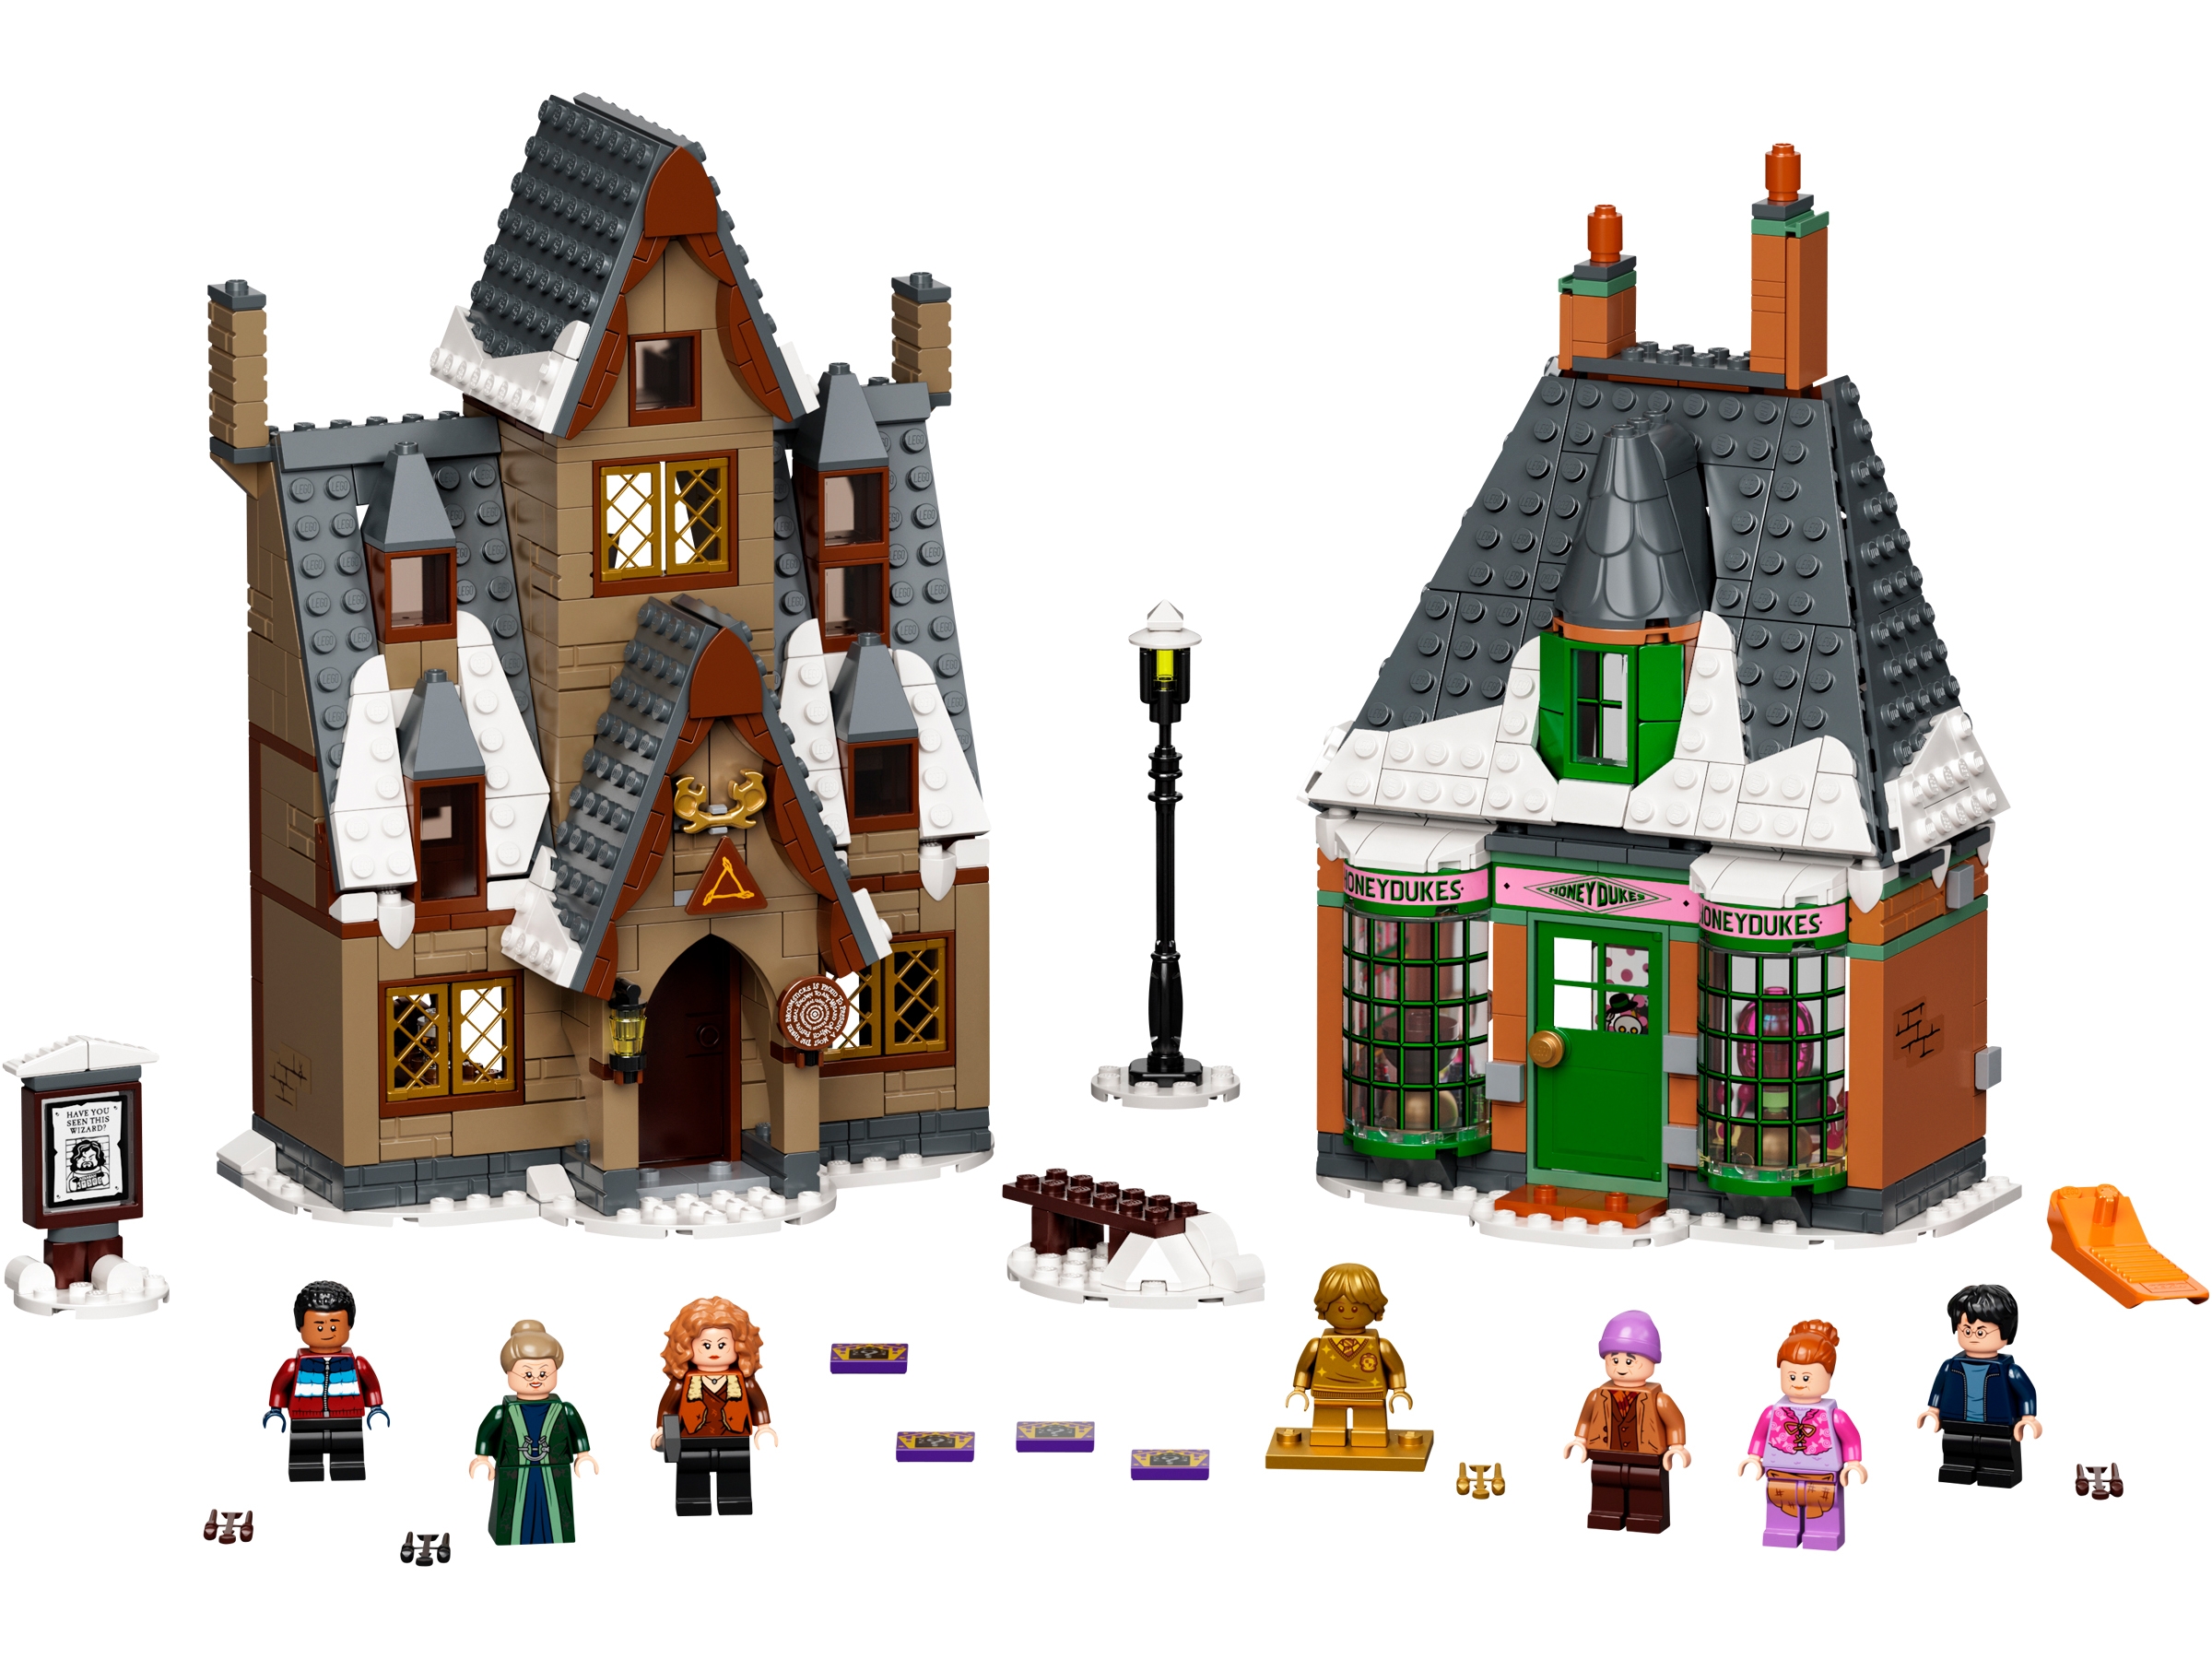 Lego 71043 Kit de construção do castelo de Harry Potter Hogwarts,  multicolor